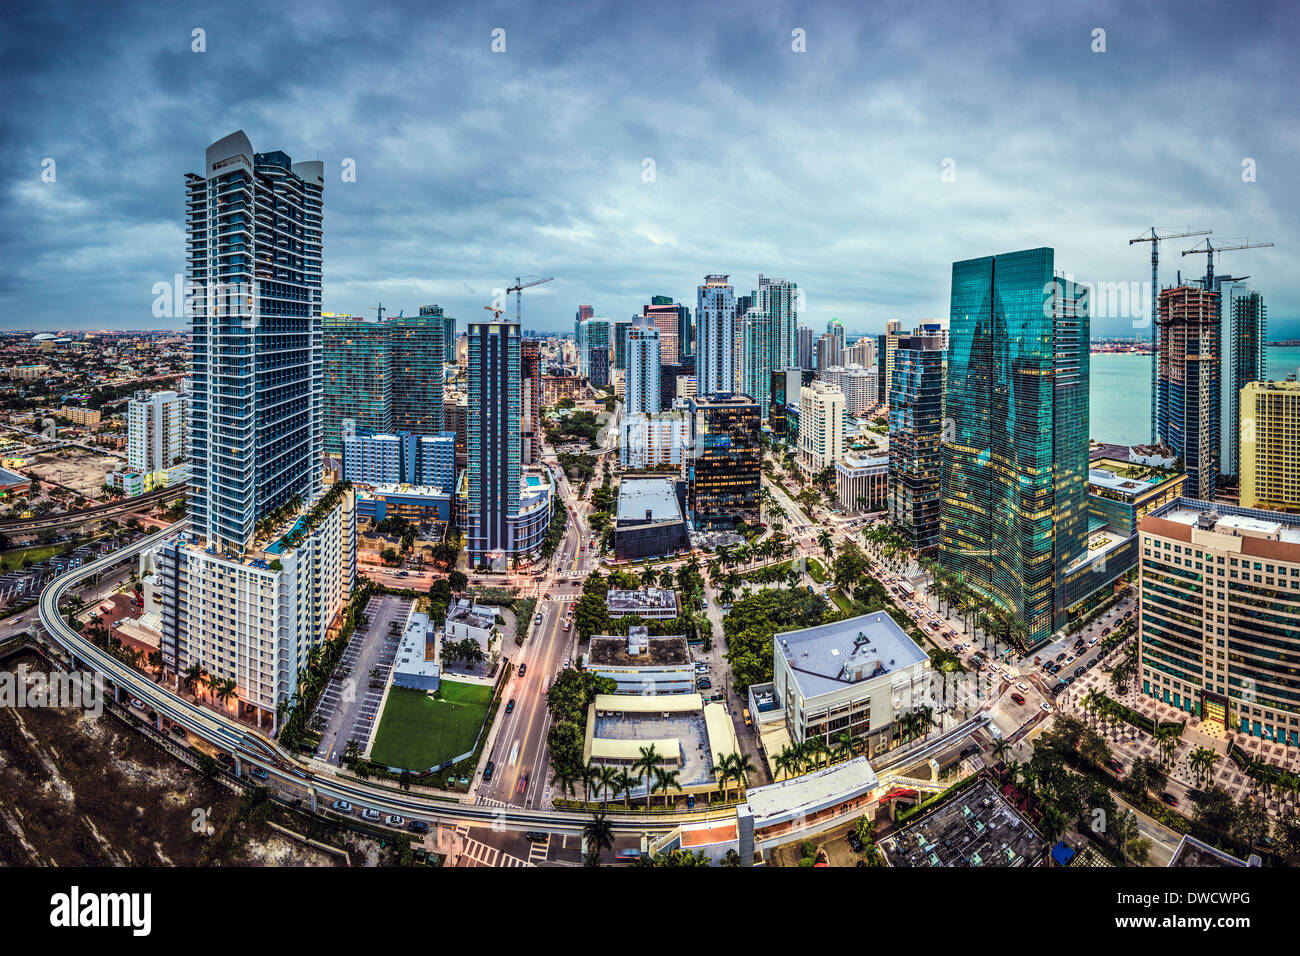 Miami, Florida, USA downtown aerial cityscape. Stock Photo